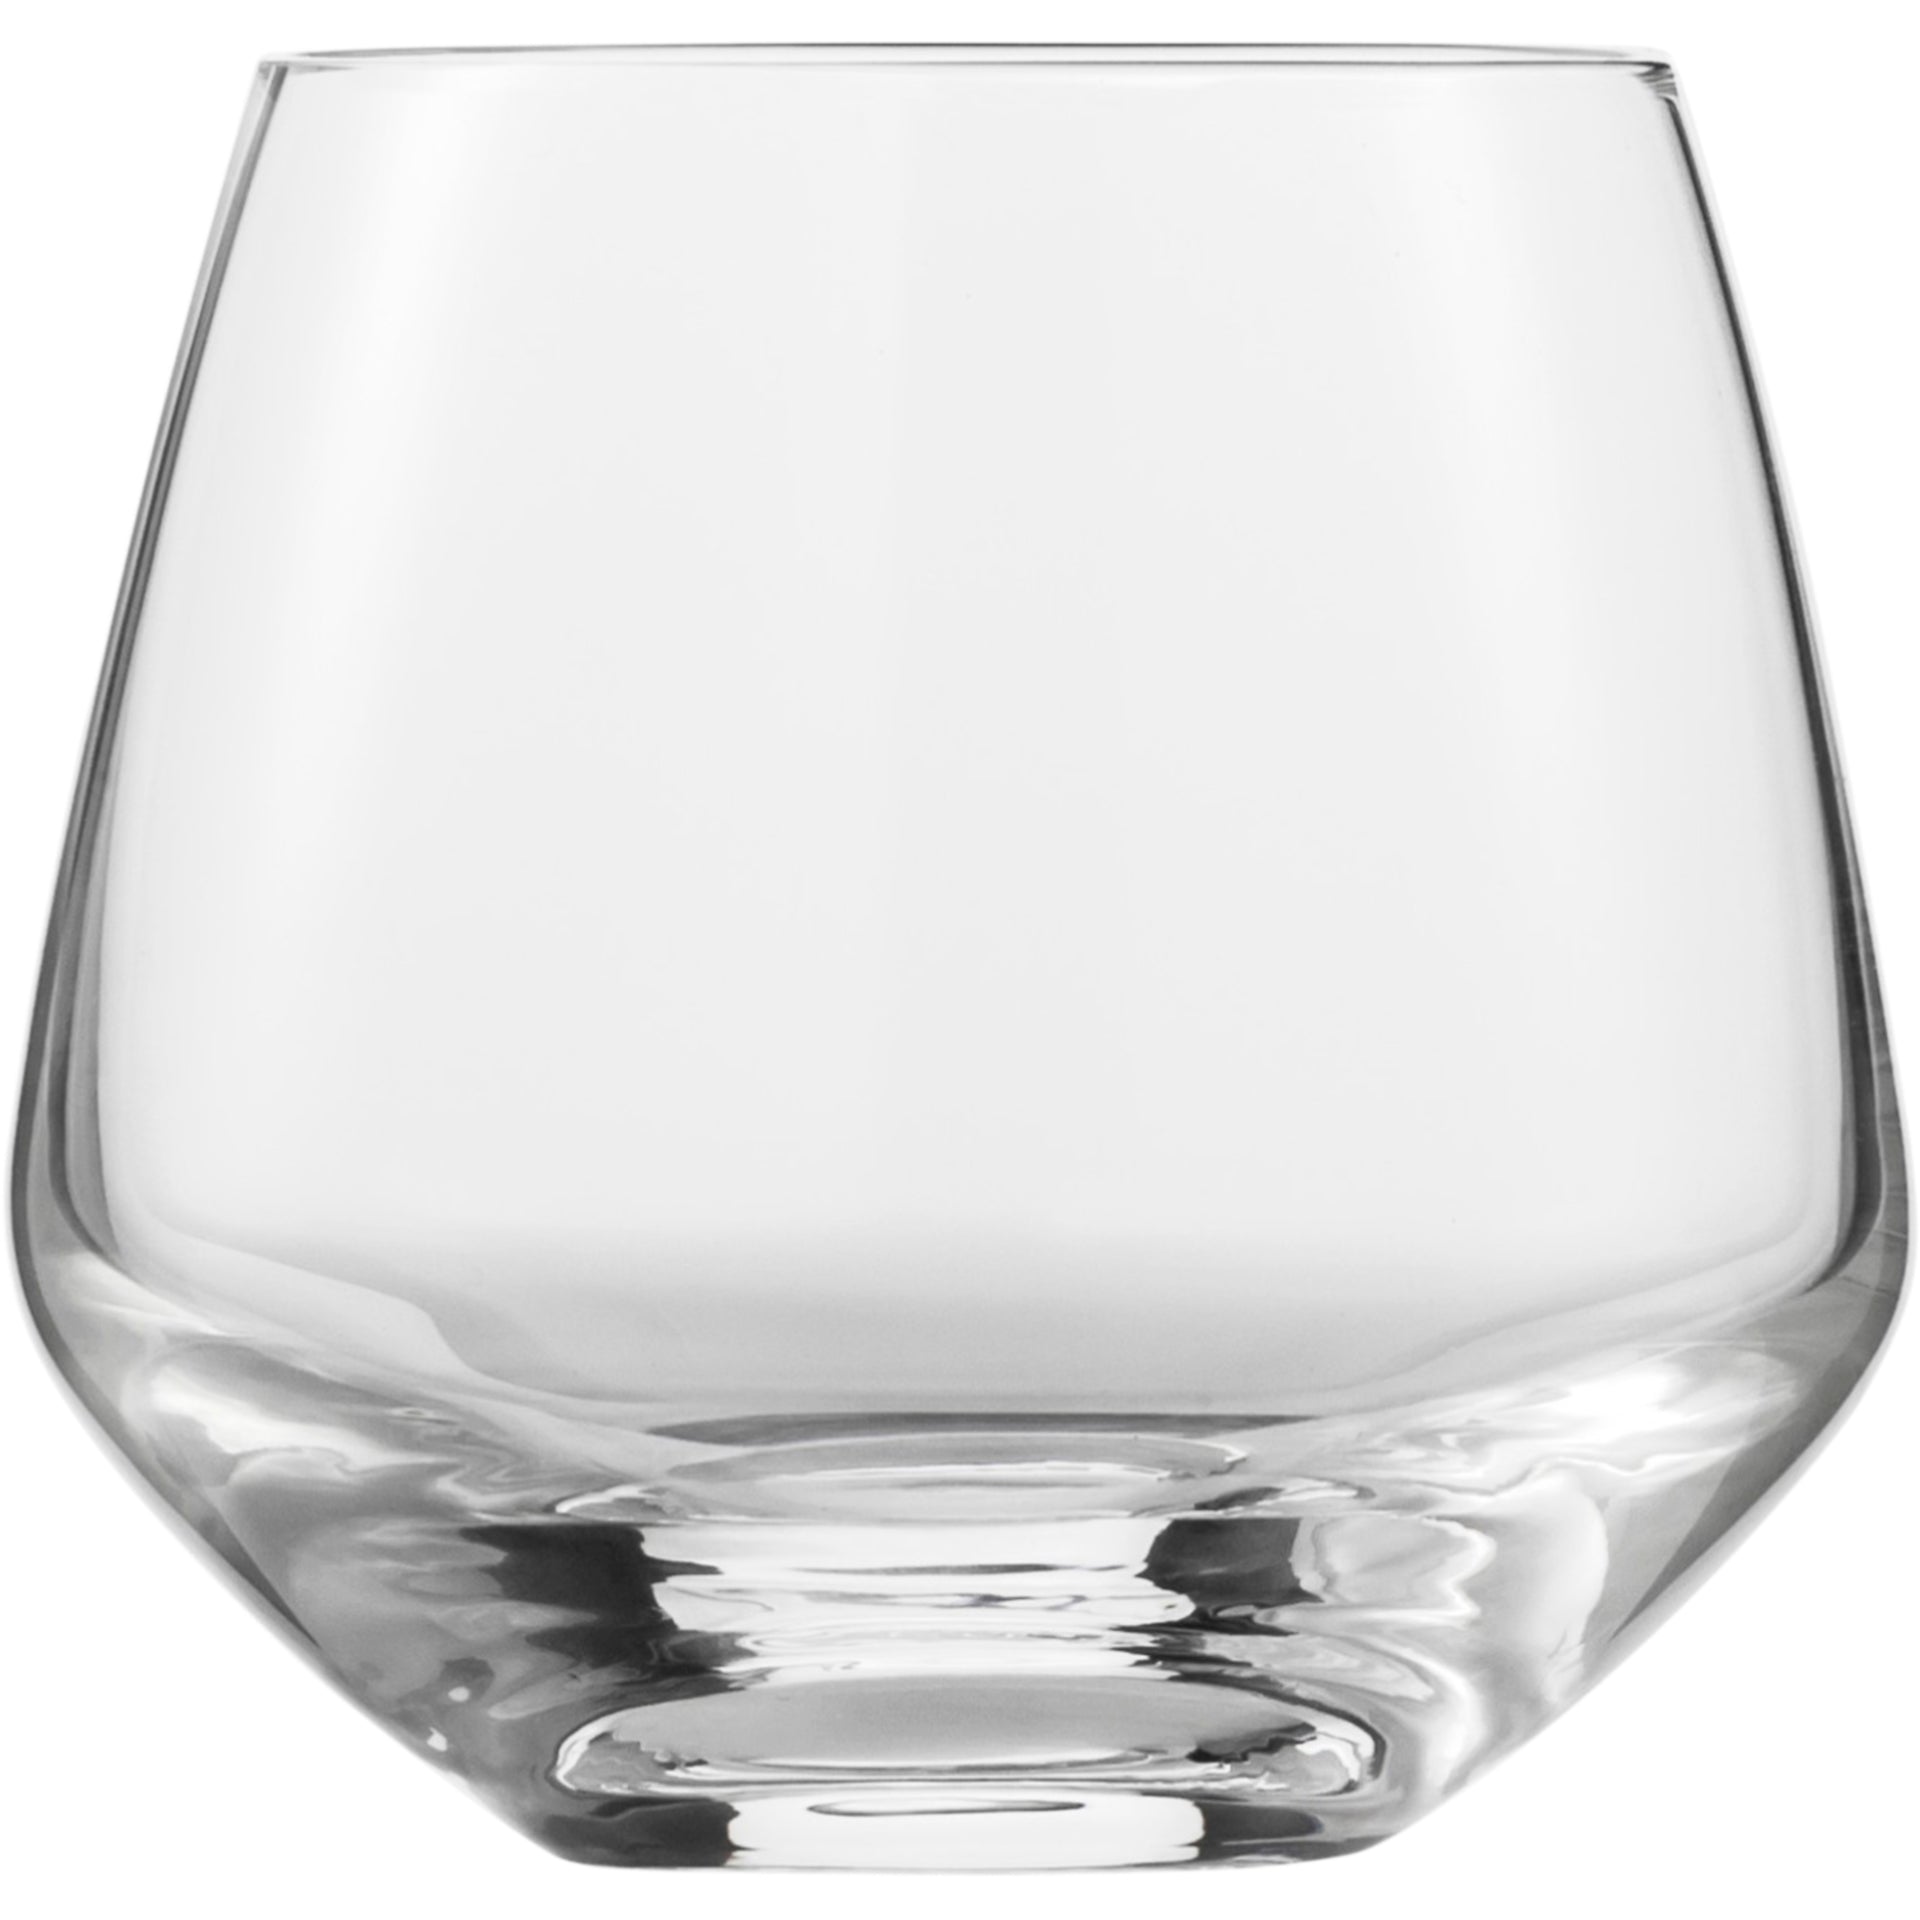 Eisch Whiskyglas Sky SENSISPLUS - 4 Stück im Geschenkkarton 518/14